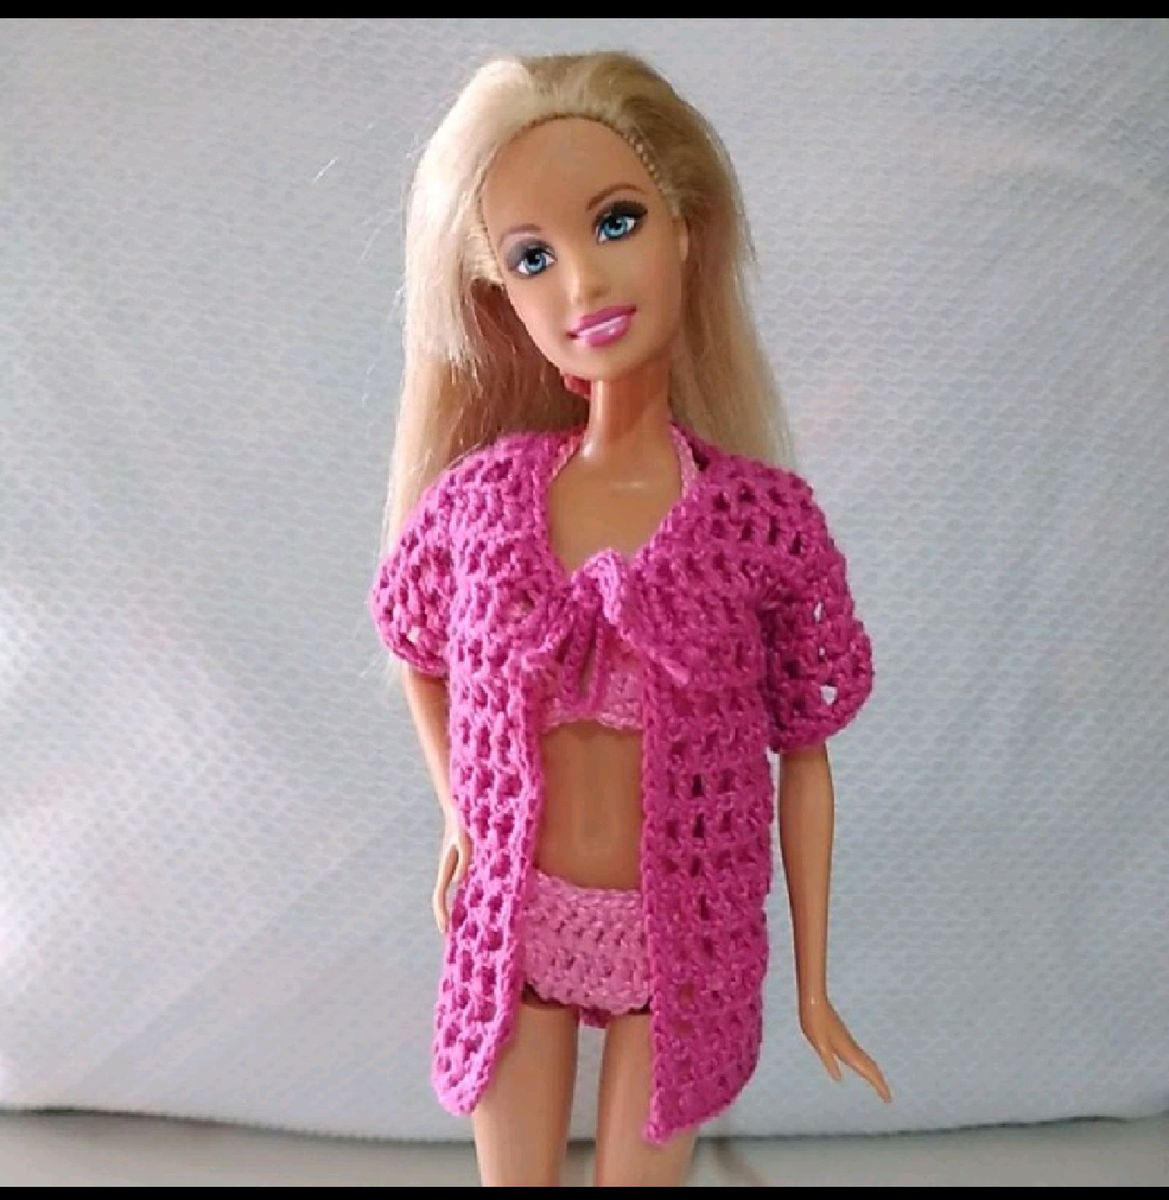 Brinquedo Menina Roupinha de boneca Barbie e Similares 1